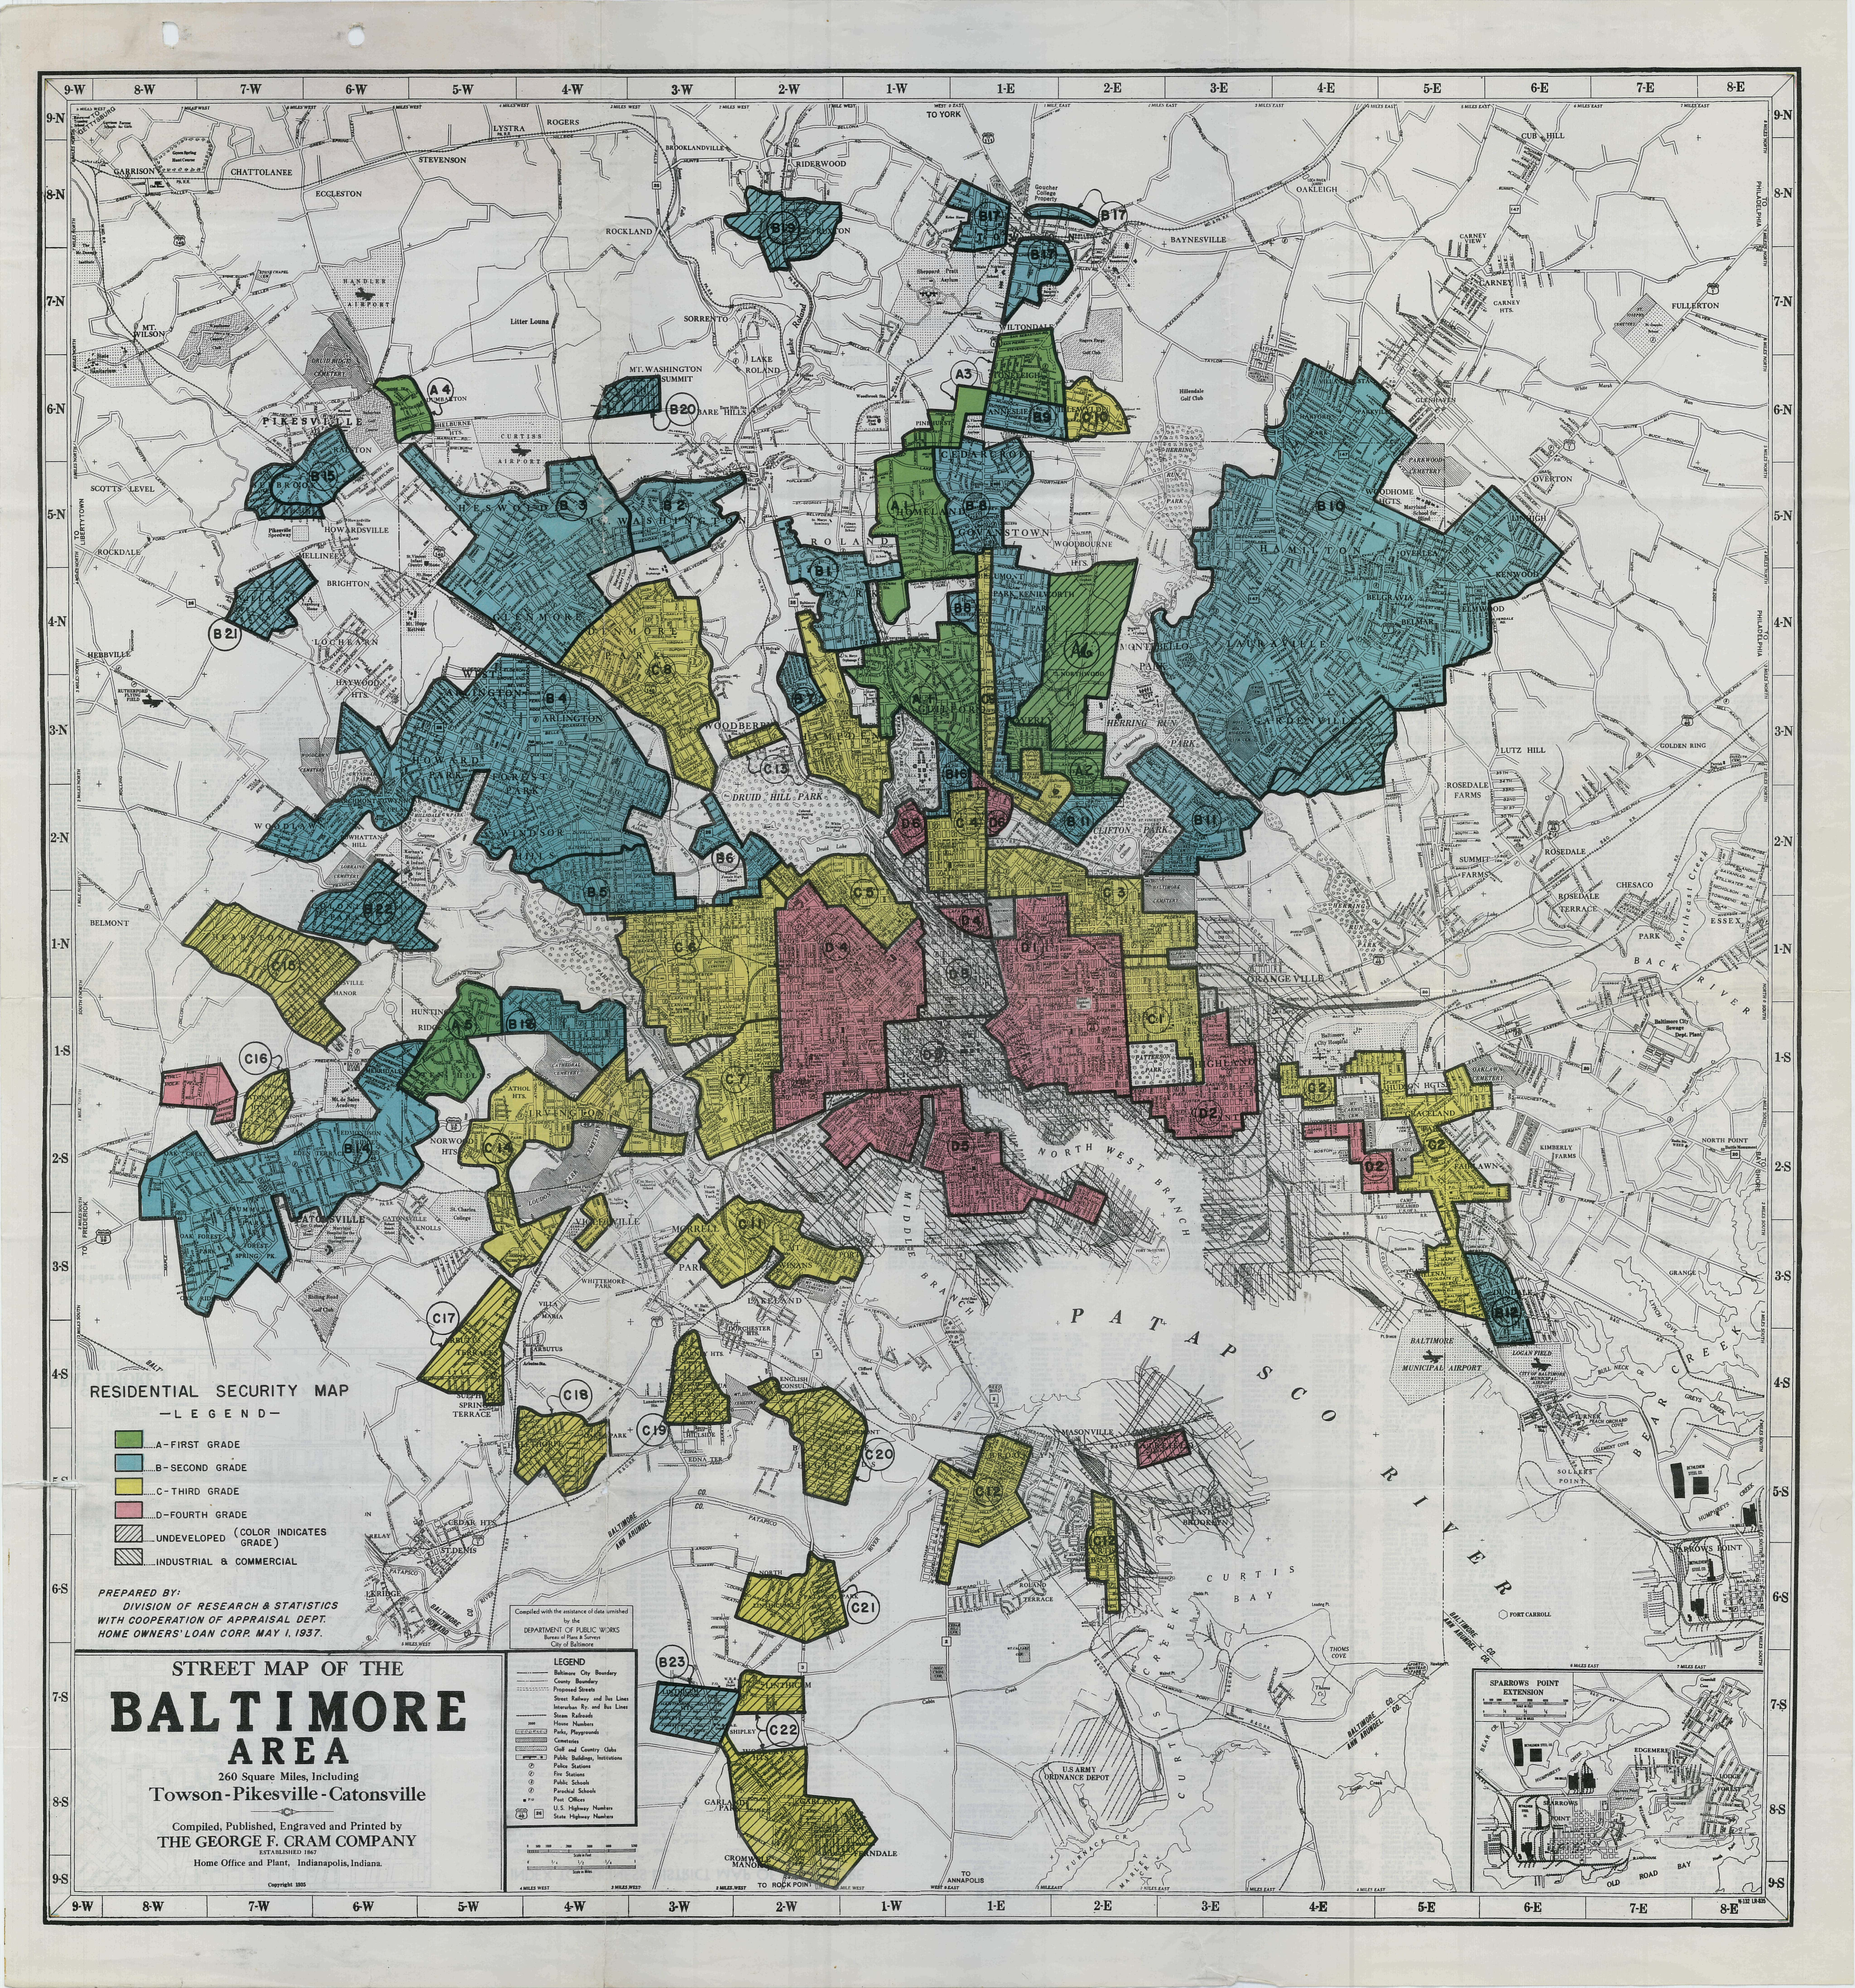 Baltimore security grade map